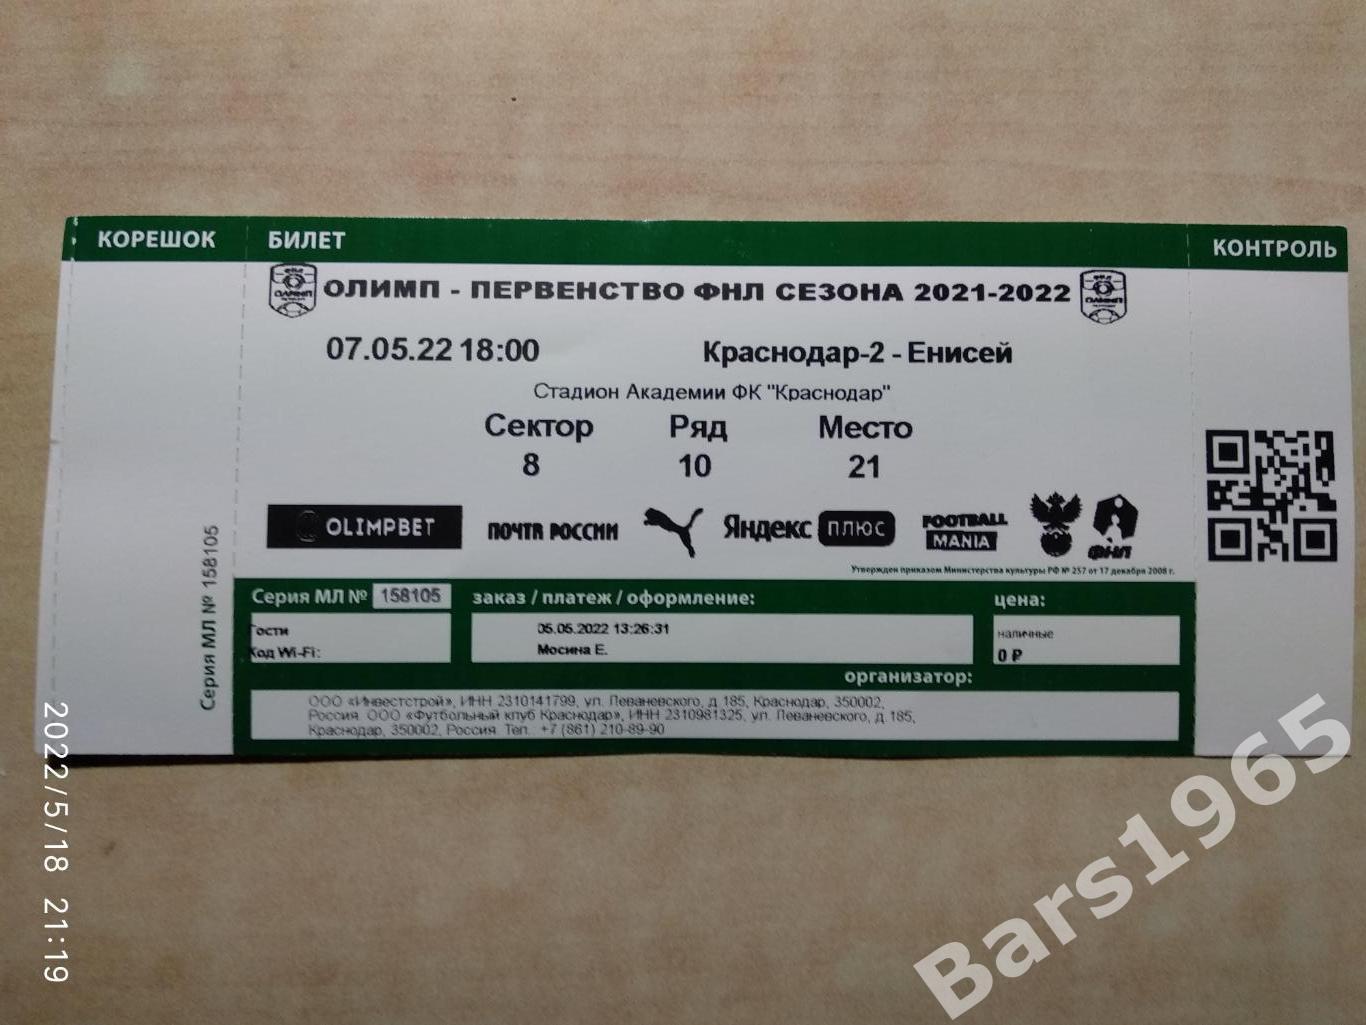 Краснодар-2 - Енисей Красноярск 2022 Билет